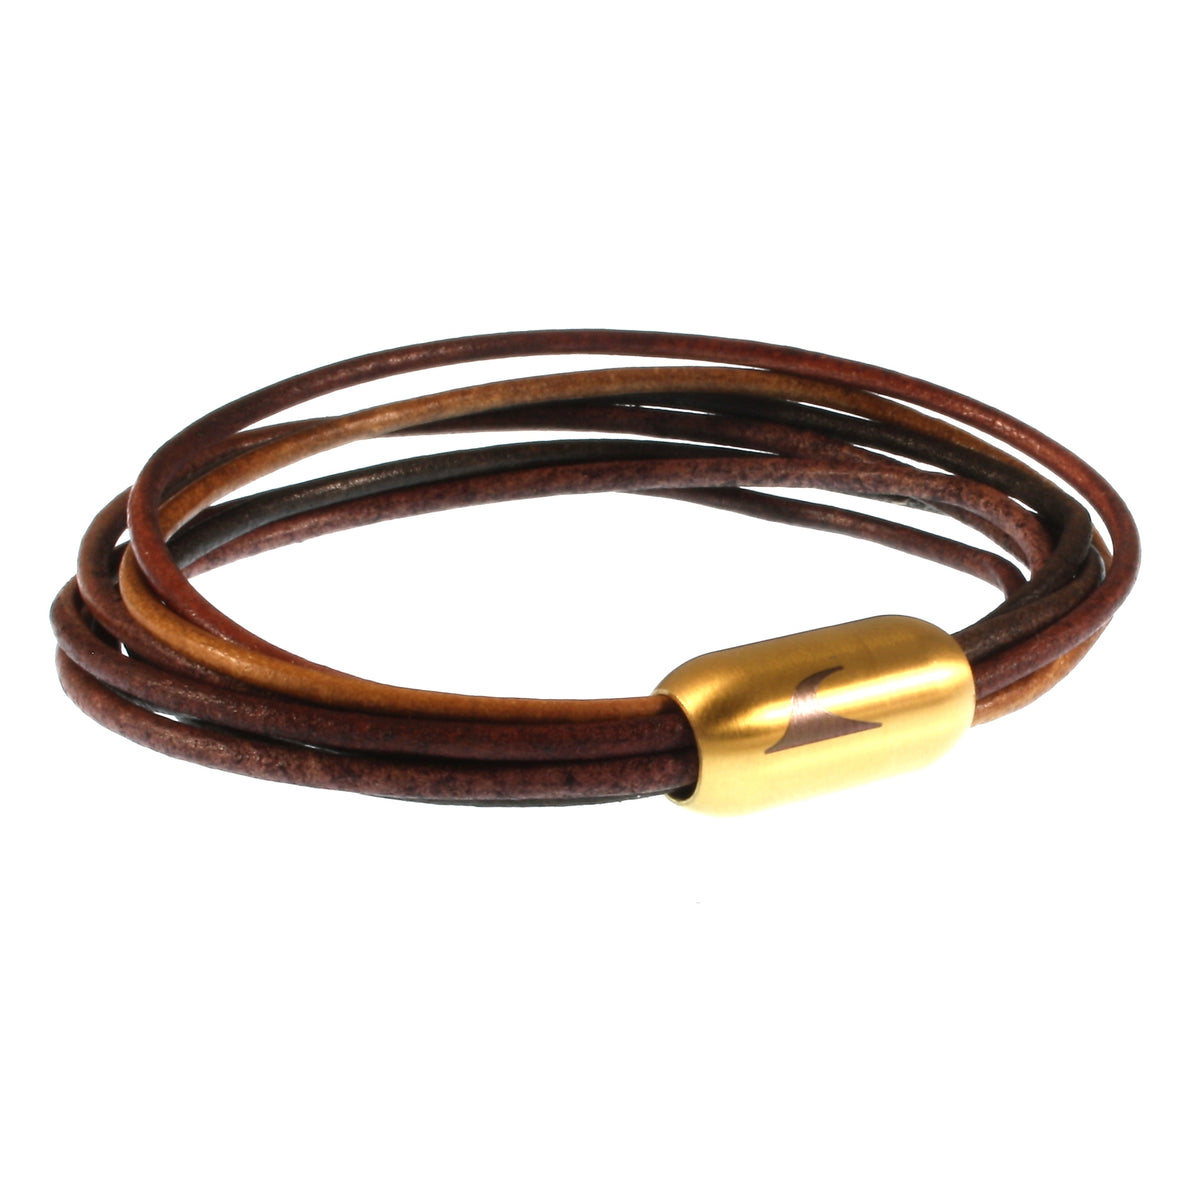 Damen-Leder-armband-fem-wood-gold-Edelstahlverschluss-vorn-wavepirate-shop-r